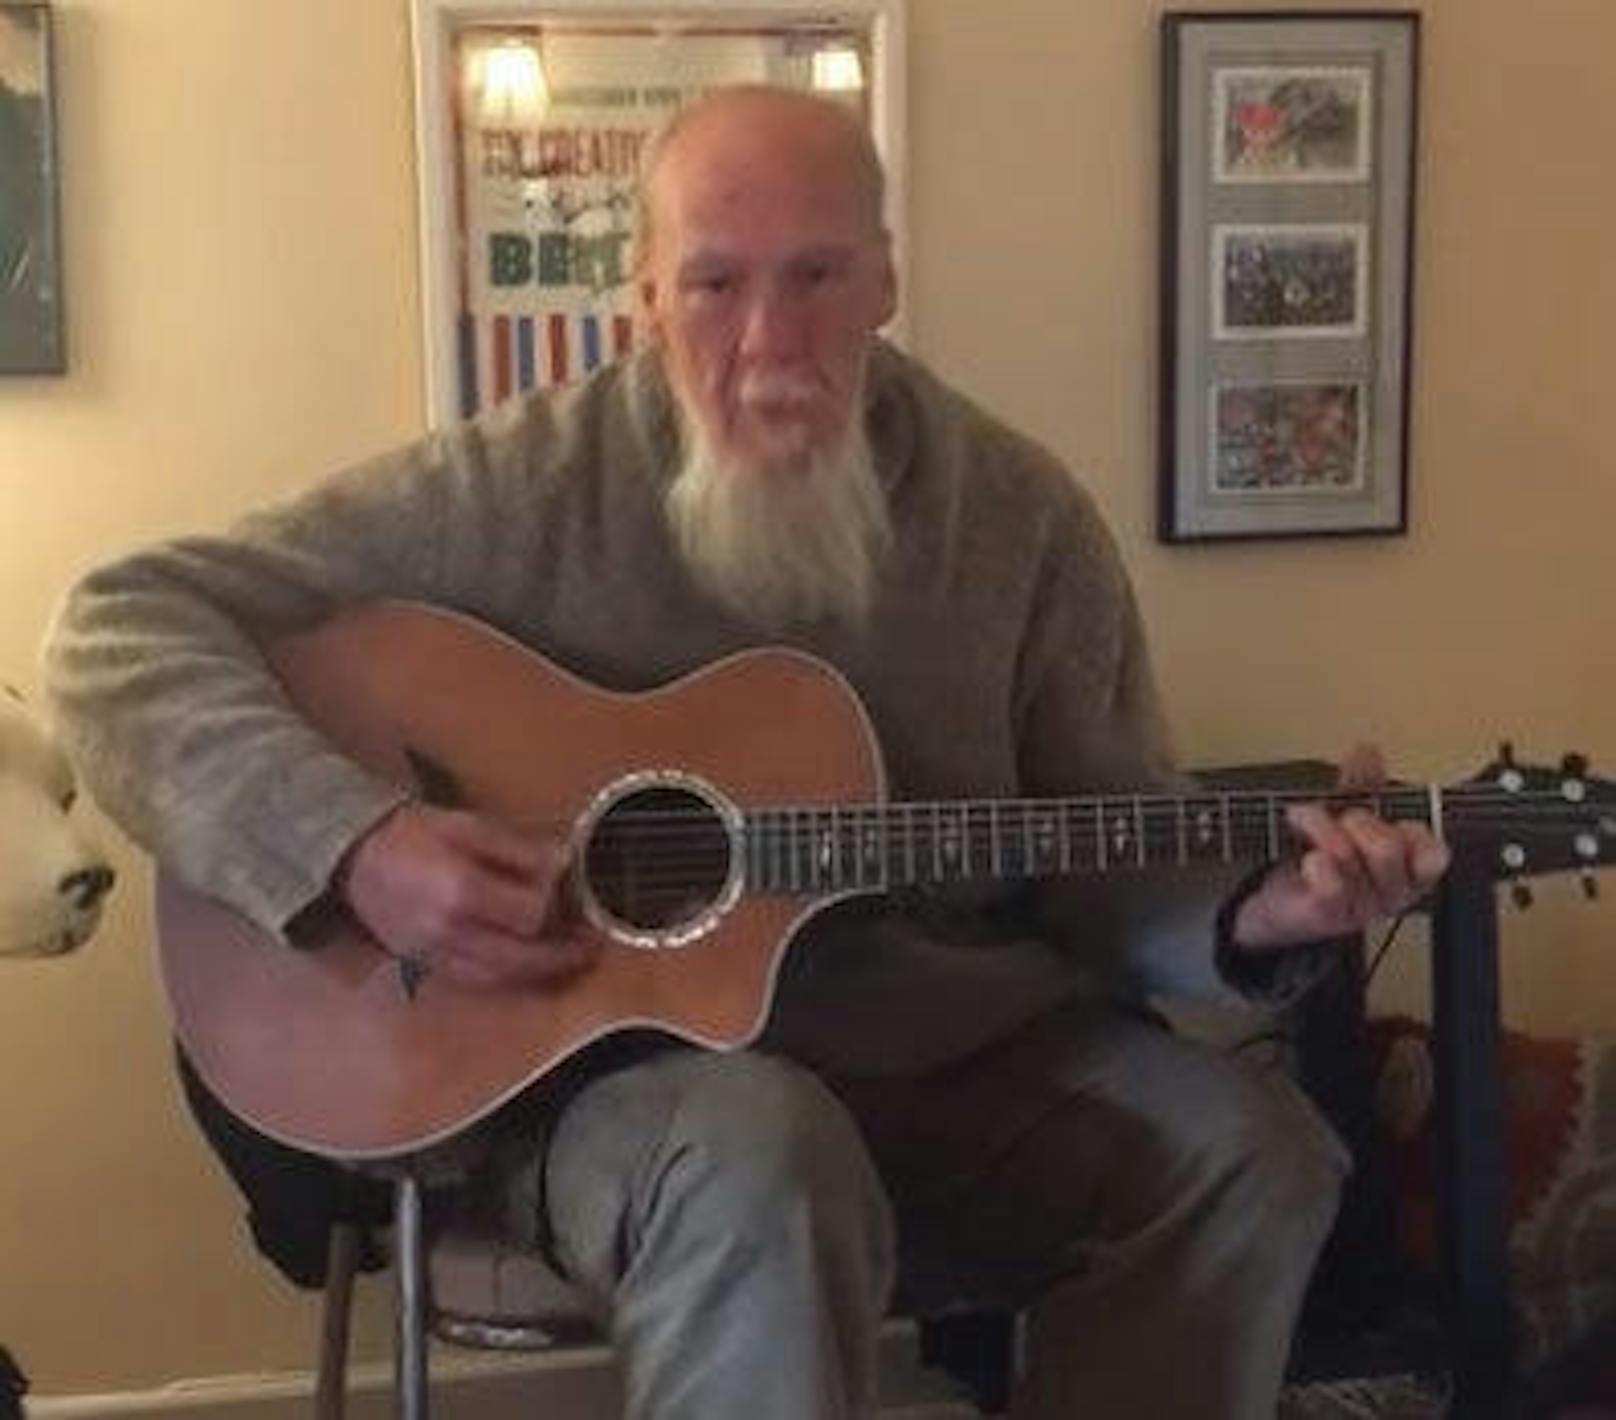 Auch ihr Opfer, der 54-jährige Gerald Melton, singt auch, wie ein Youtube-Video zeigt